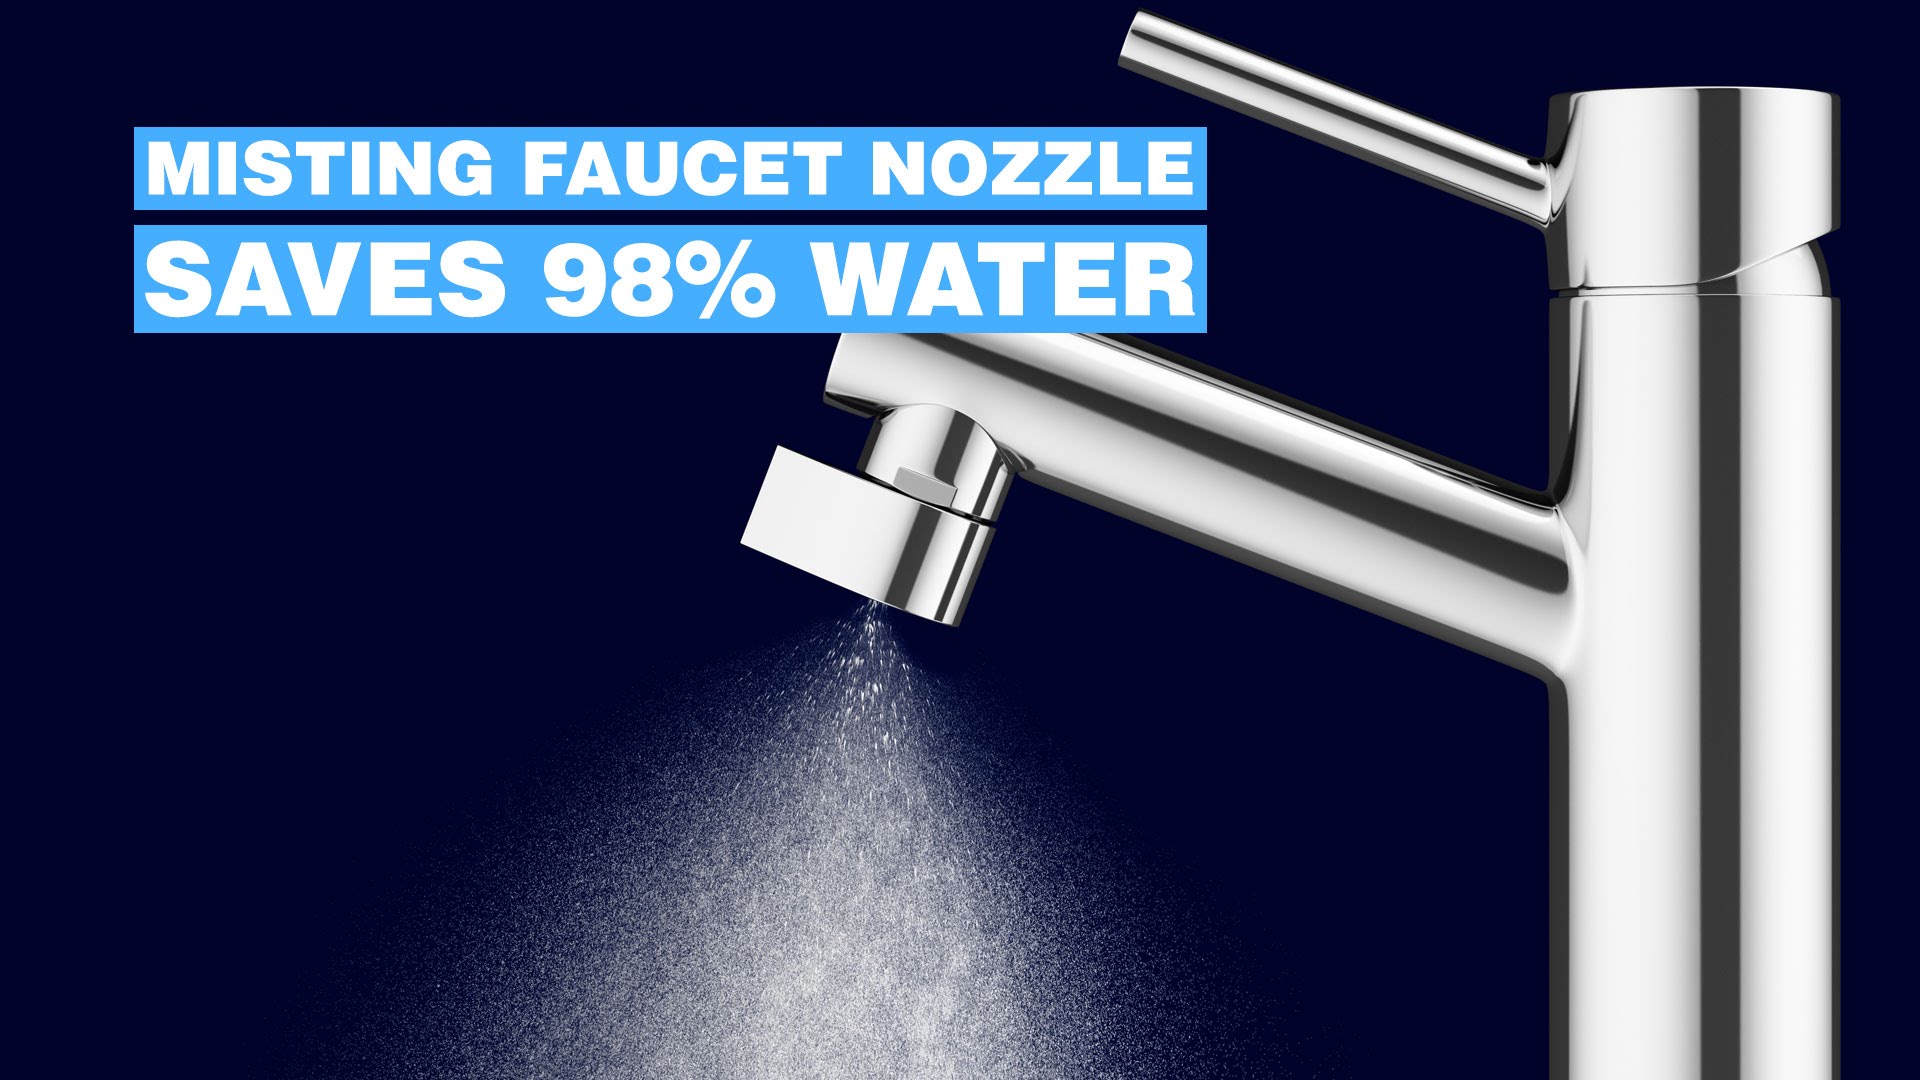 Cet embout pour robinet veut nous faire économiser 98% d’eau !